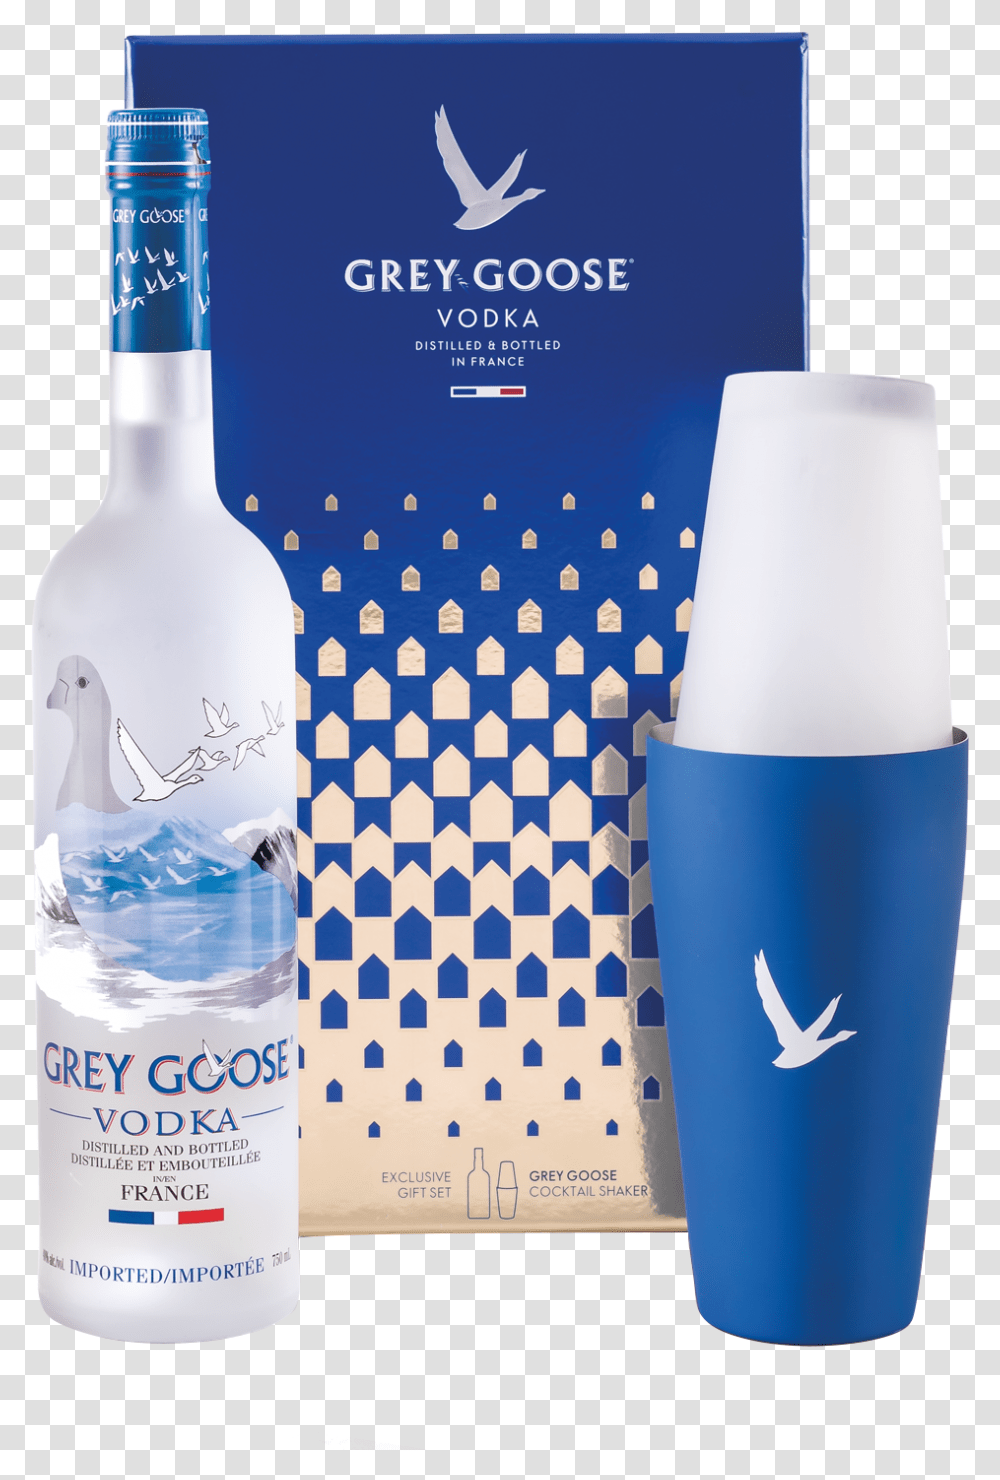 Grey Goose Vodka Gift Pack Grey Goose Vodka In Box, Bottle, Shaker, Beverage, Drink Transparent Png